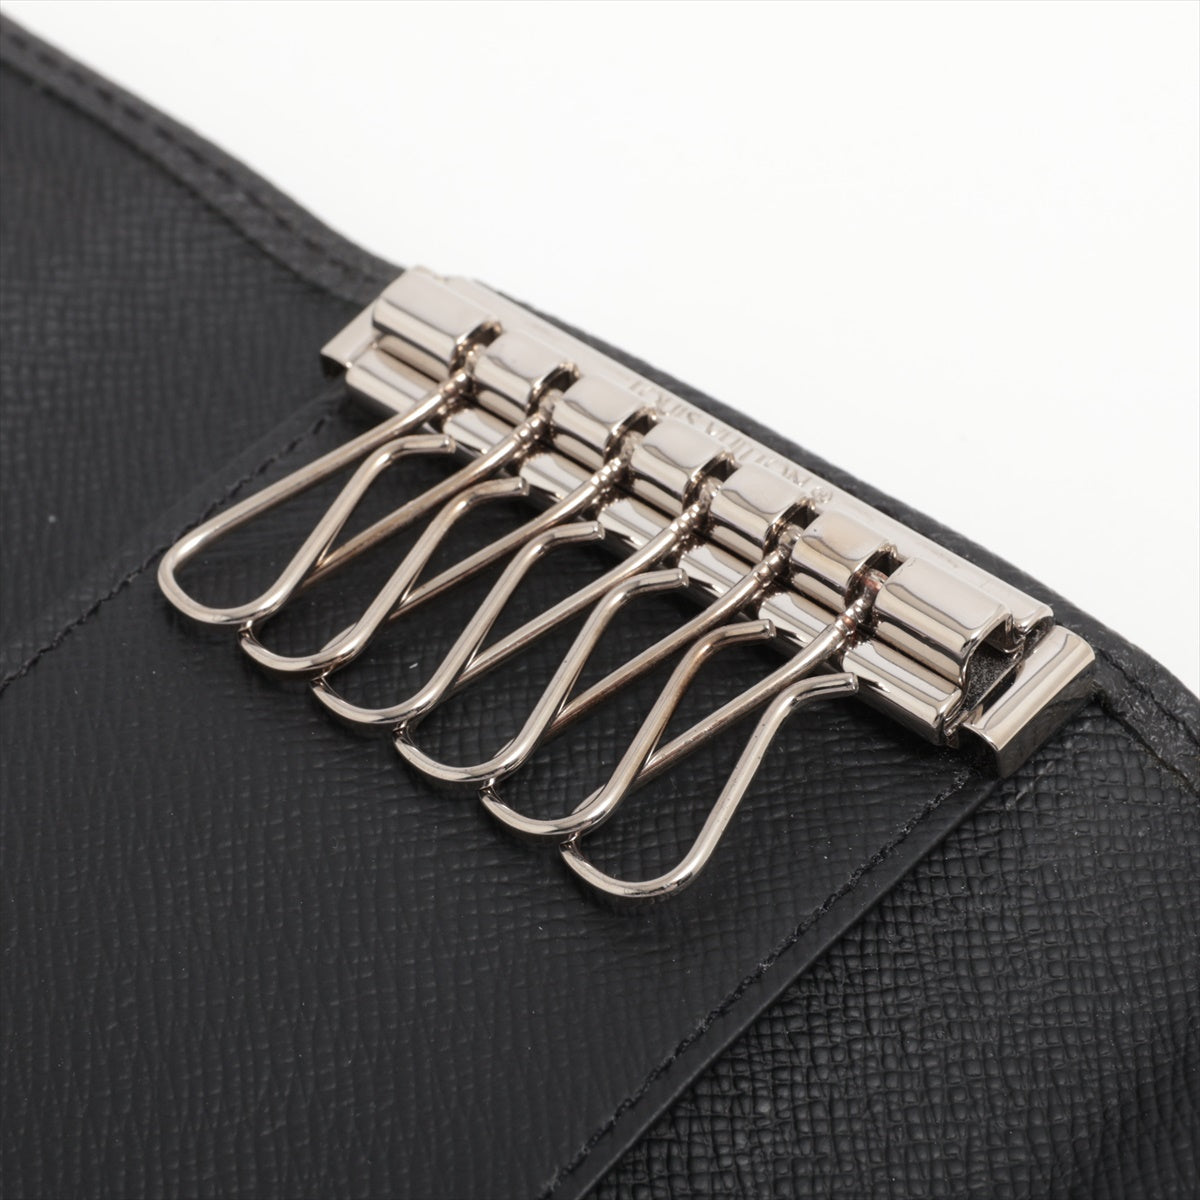 Louis Vuitton Taiga Multiclés 6 M30500 Noir Key Case responsive RFID